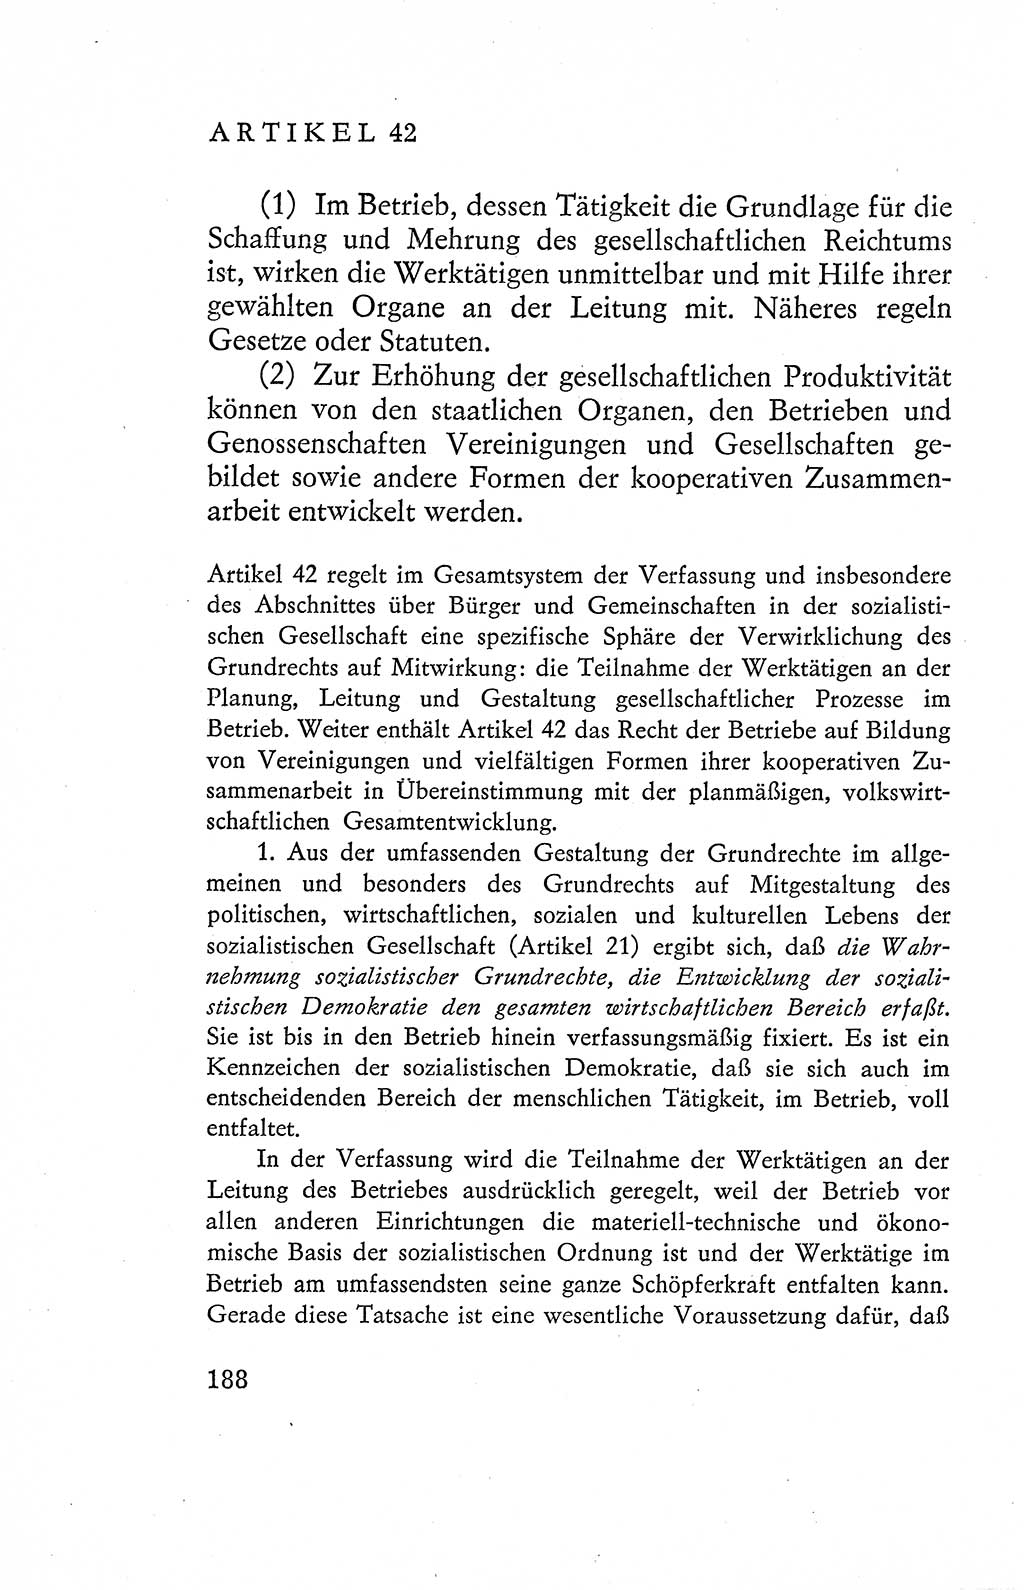 Verfassung der Deutschen Demokratischen Republik (DDR), Dokumente, Kommentar 1969, Band 2, Seite 188 (Verf. DDR Dok. Komm. 1969, Bd. 2, S. 188)